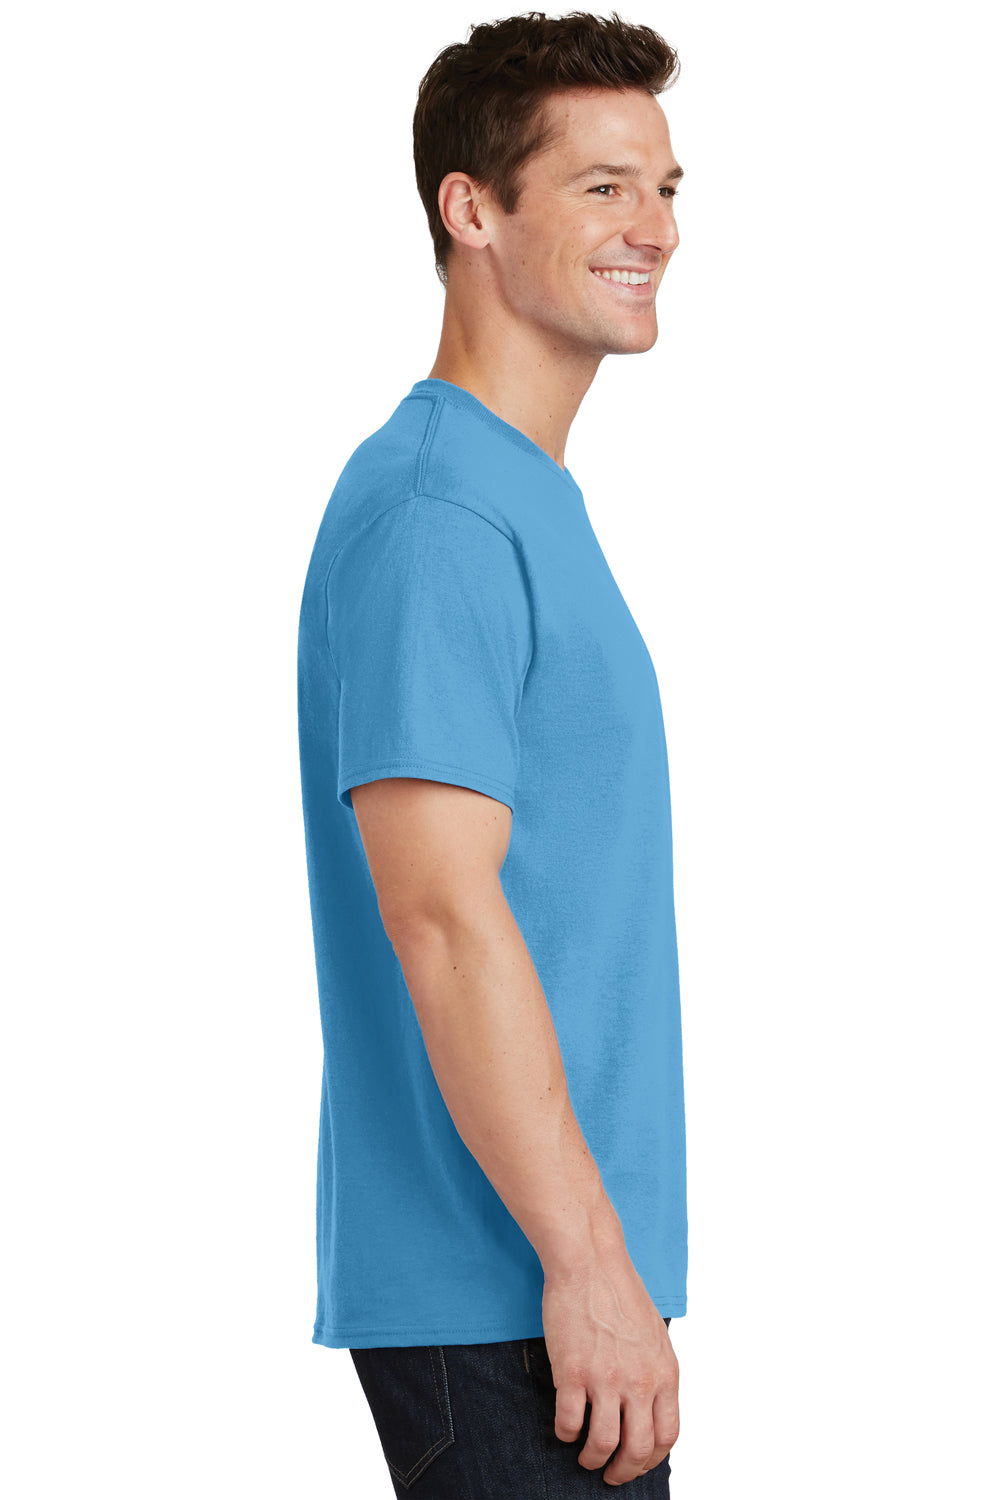 Port & Company PC54 Mens Core Short Sleeve Crewneck T-Shirt Aqua Blue Side